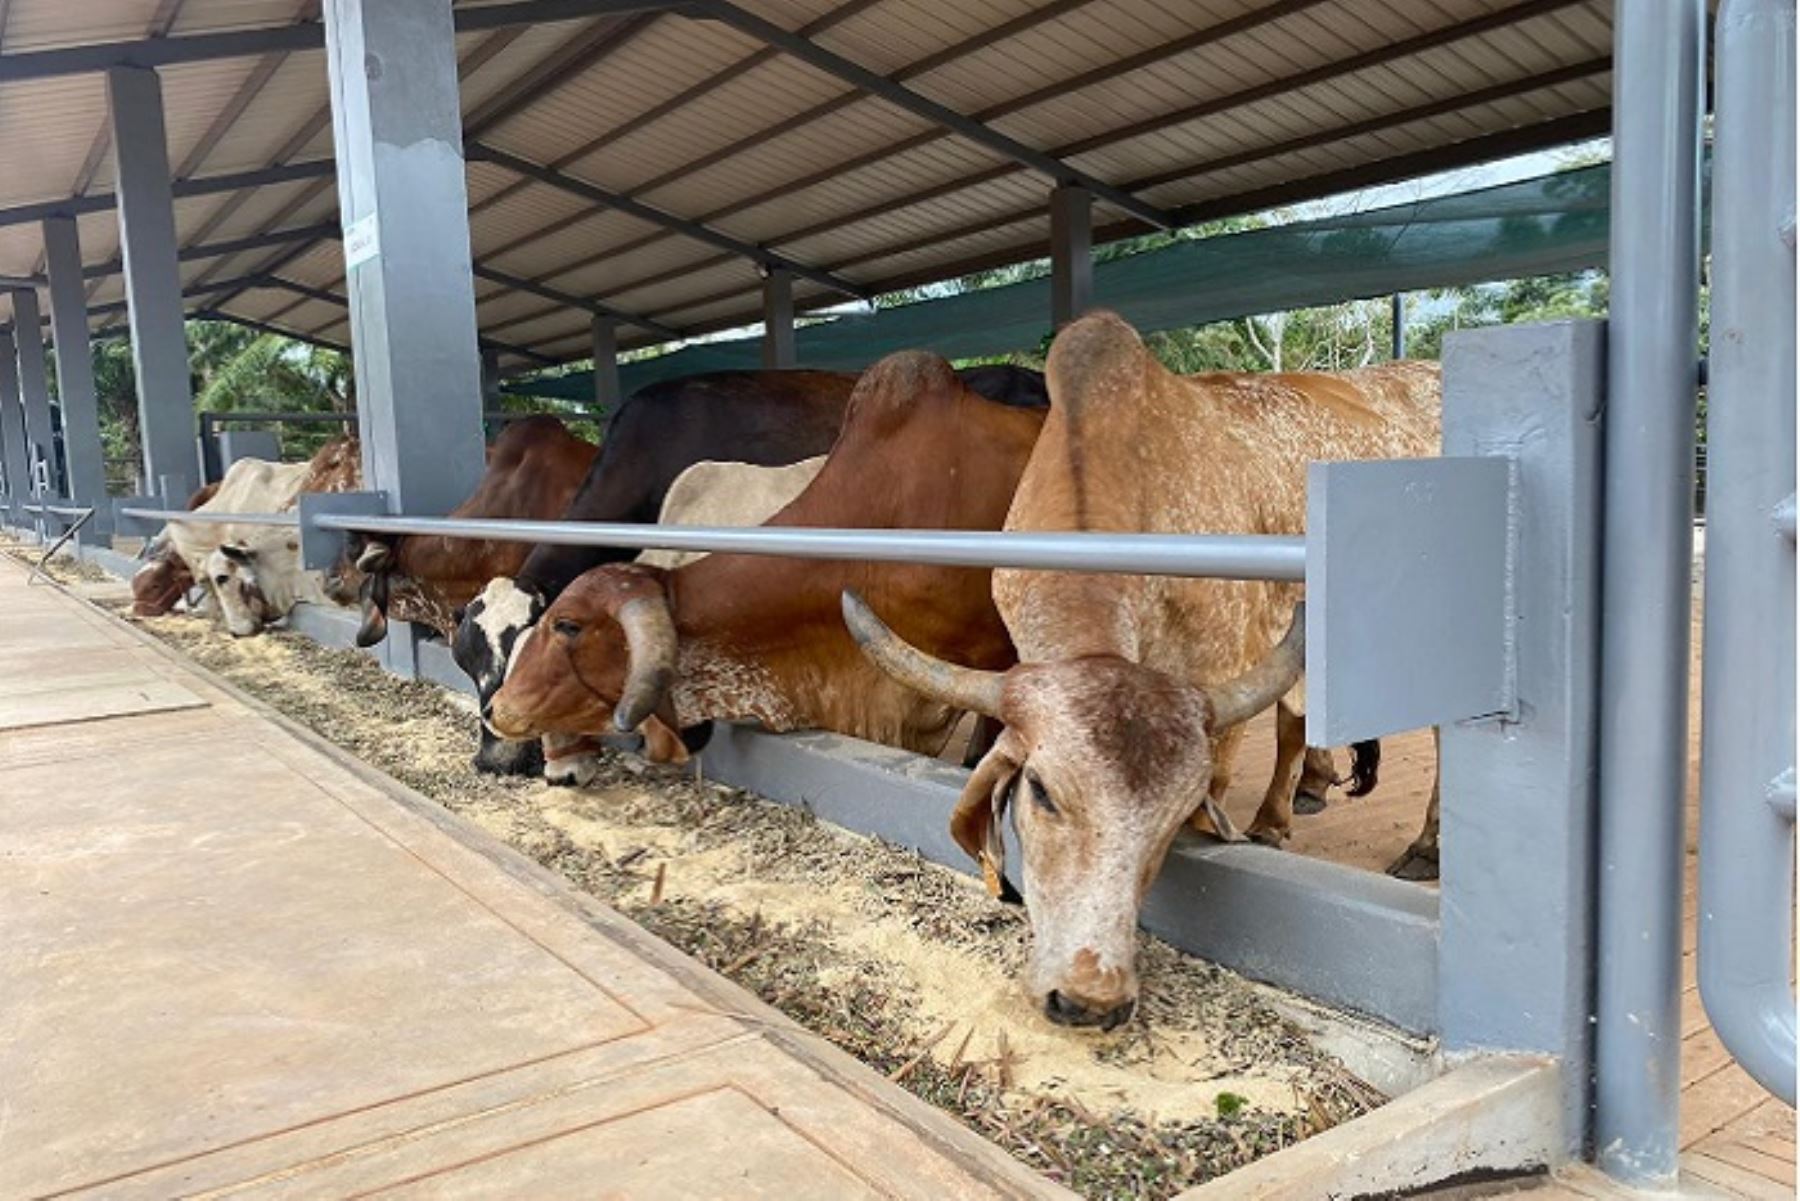 El ministro Ángel Manero anunció que con esta nueva infraestructura se busca mejorar la calidad de carne y leche de bovino mediante la transferencia de material genético de alta calidad.